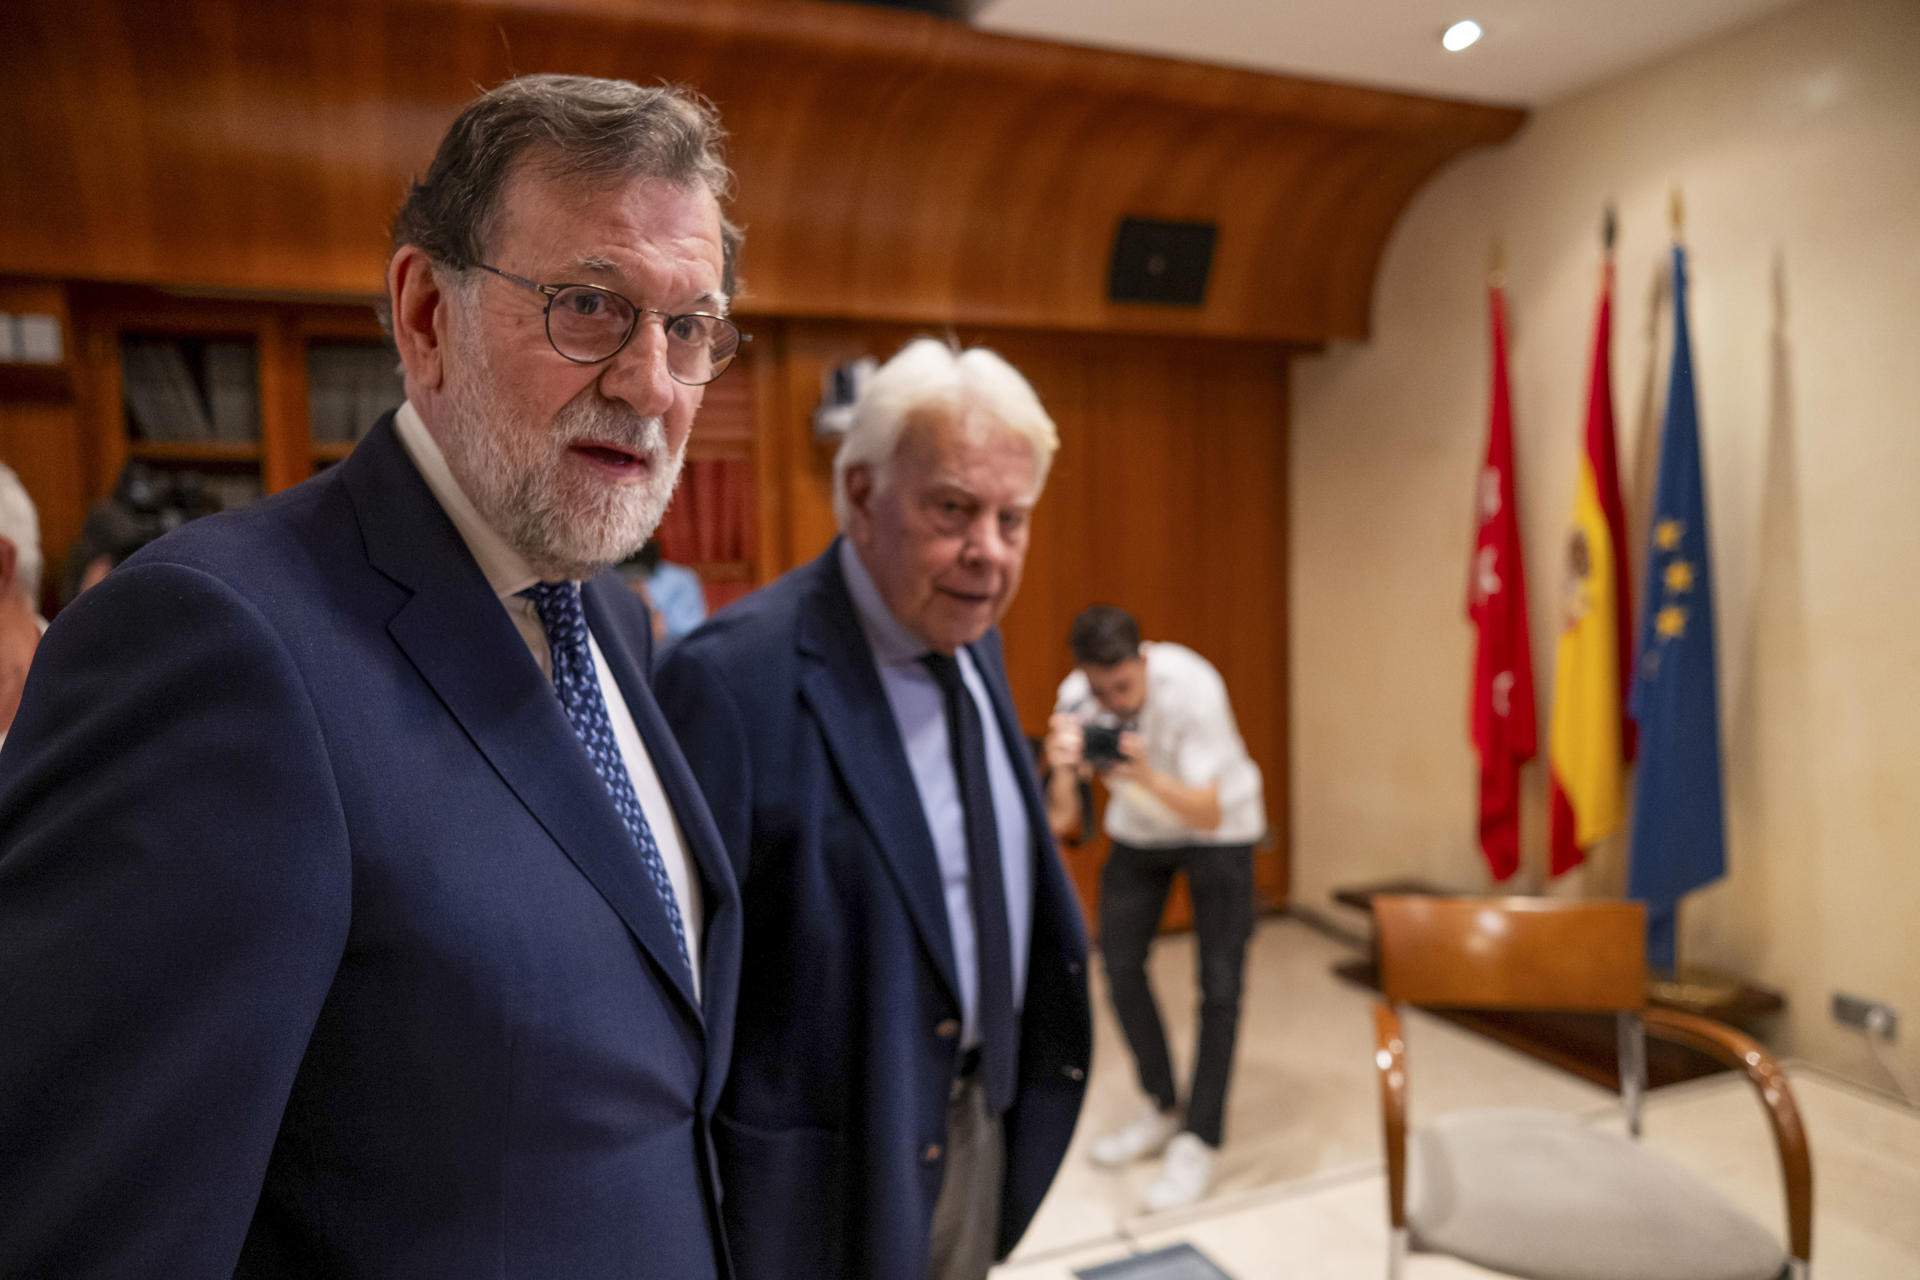 González y Rajoy hacen equipo contra la amnistía: "Que cada uno haga lo posible para la democracia"